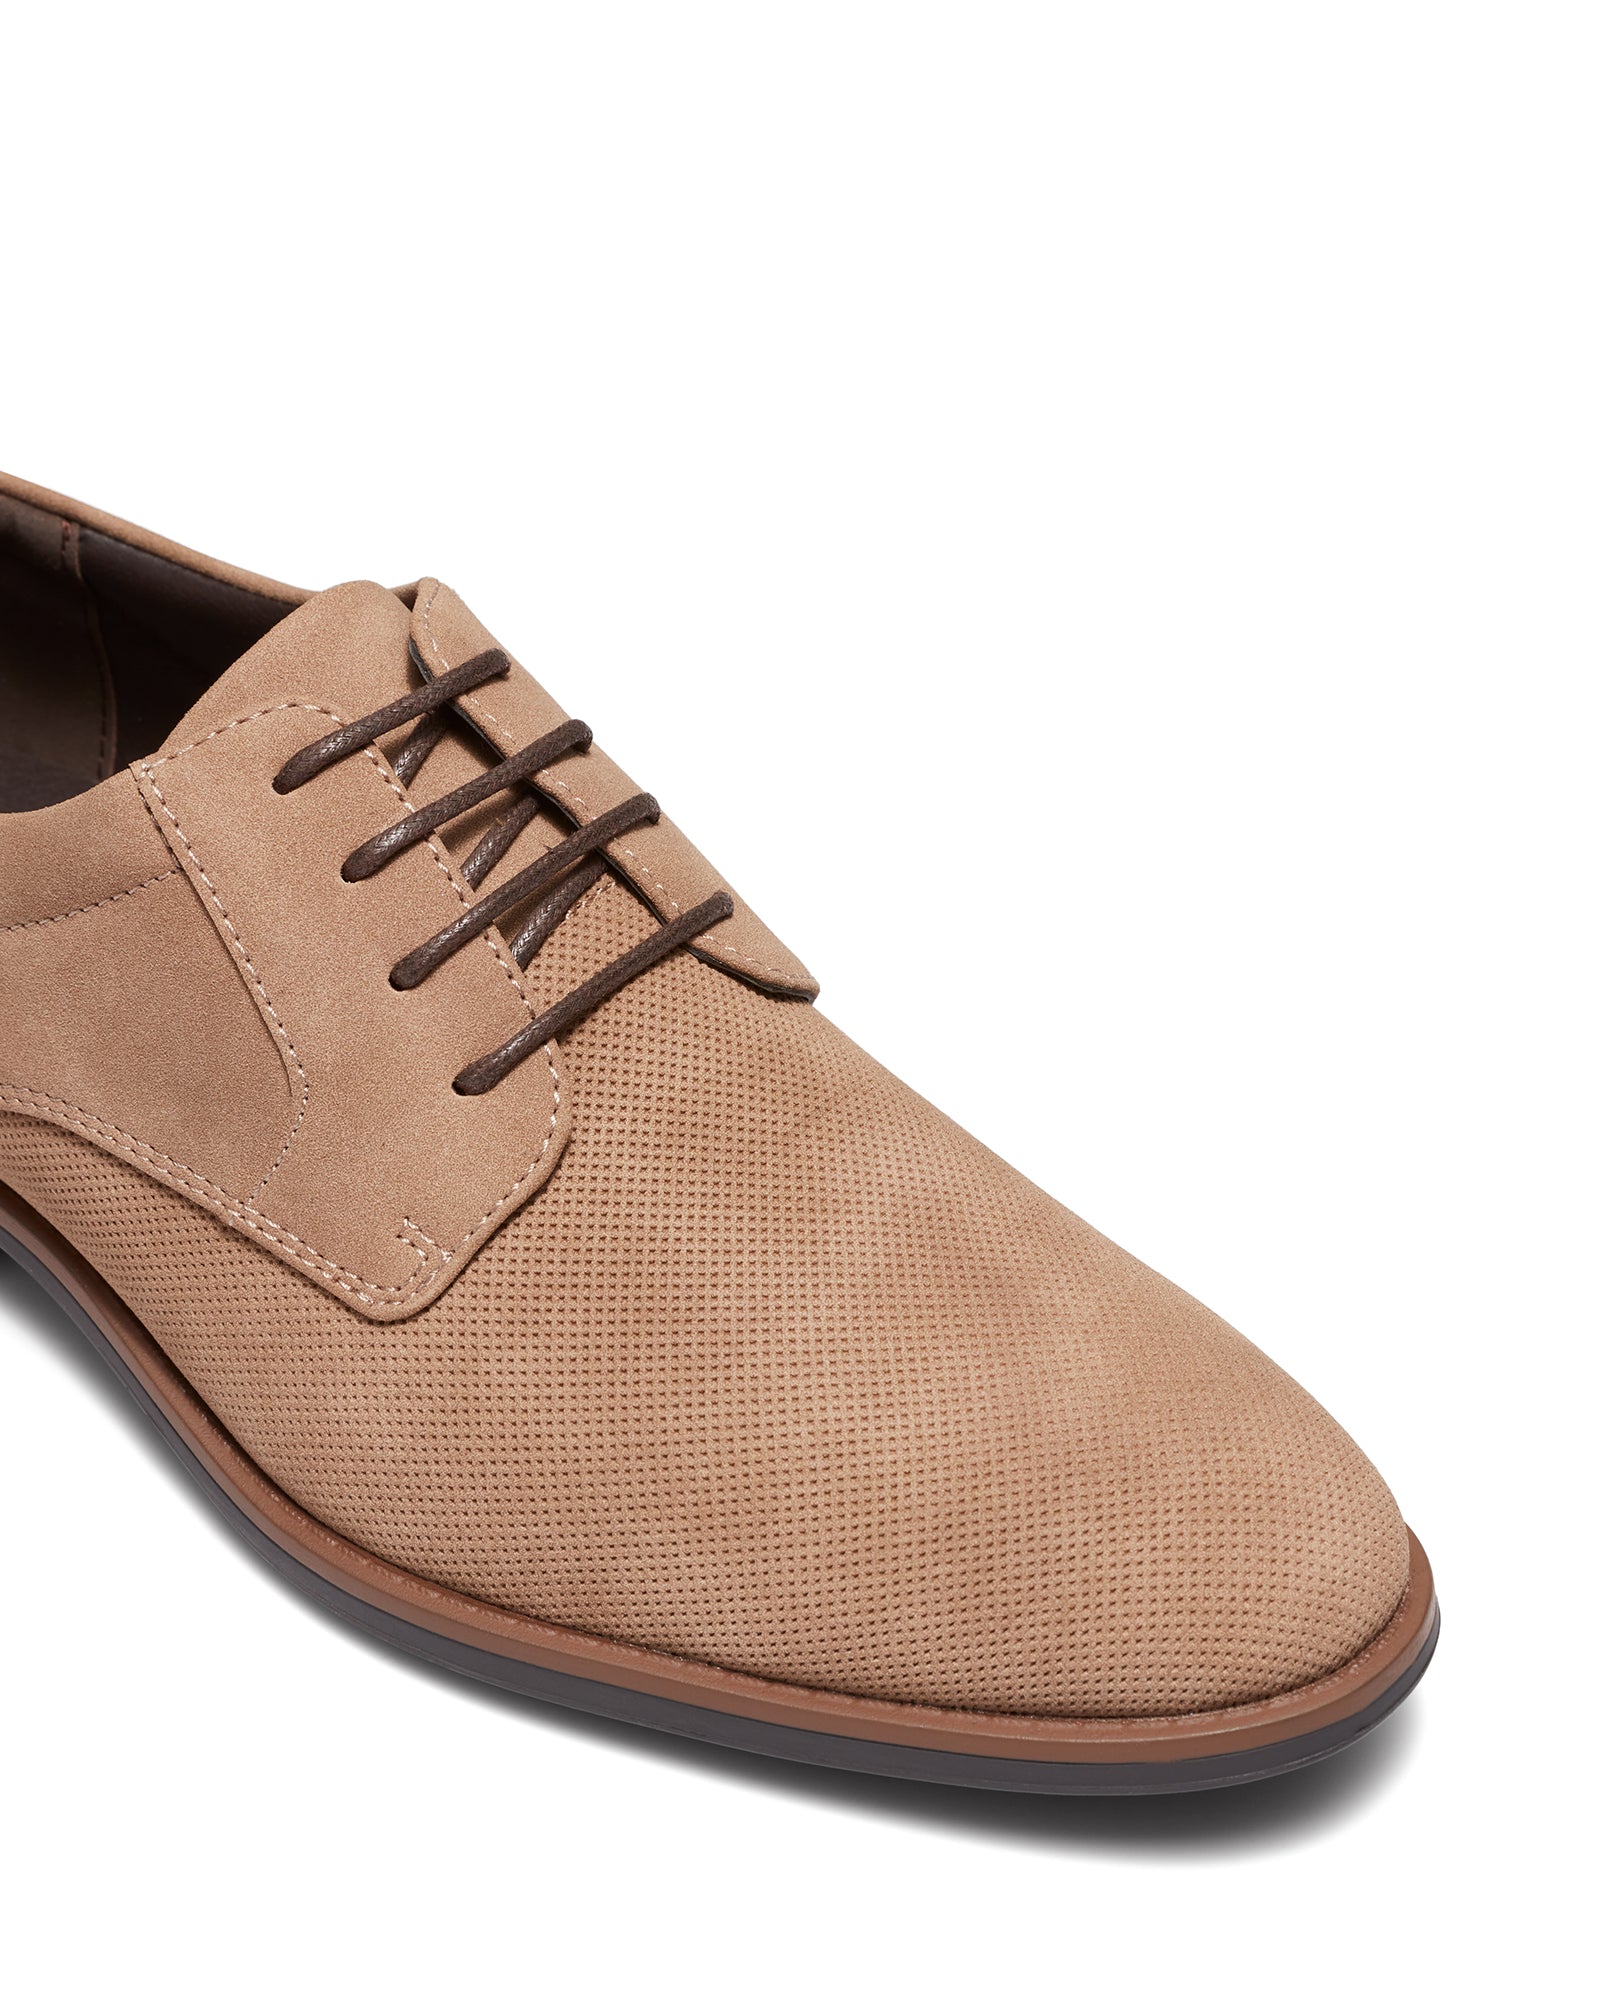 Uncut Shoes Draper Stone | Men's Dress Shoe | Derby | Lace Up | Work